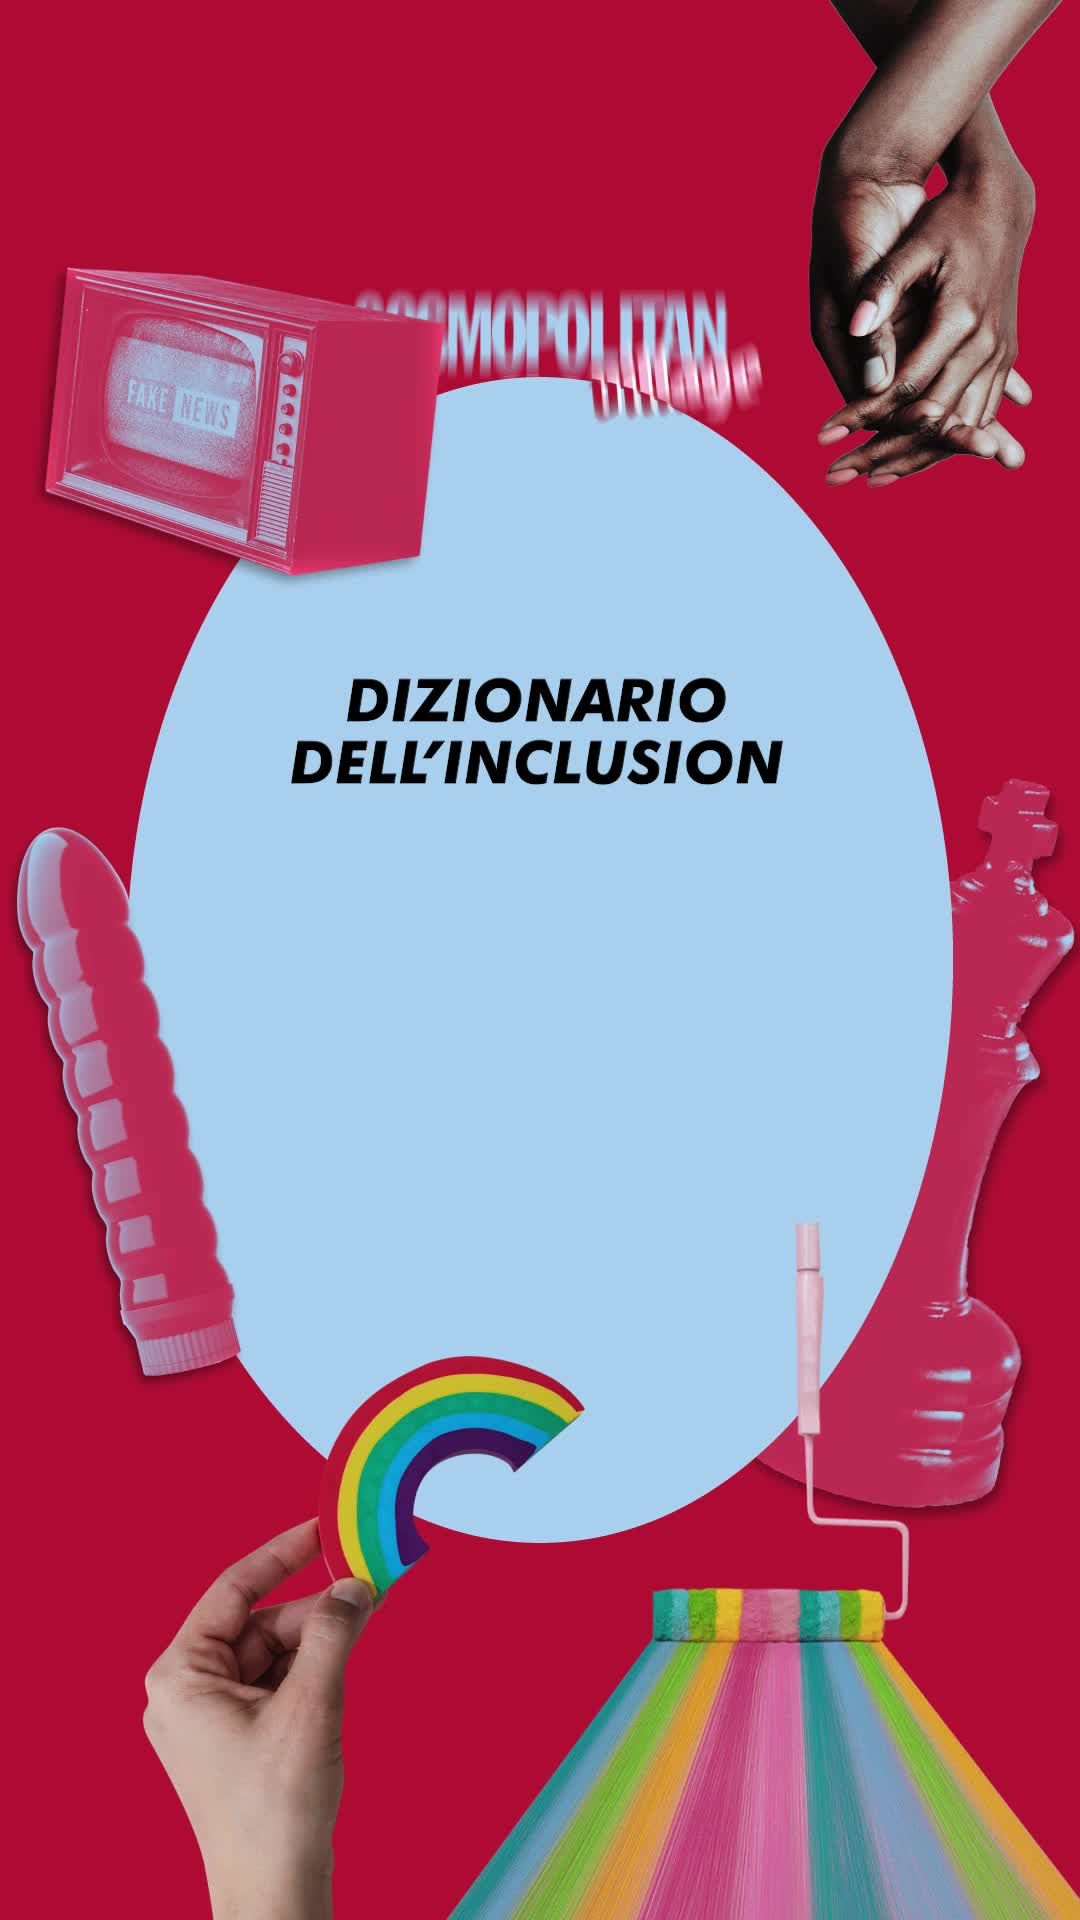 preview for Dizionario dell'inclusion: privilegio #CosmoVillage